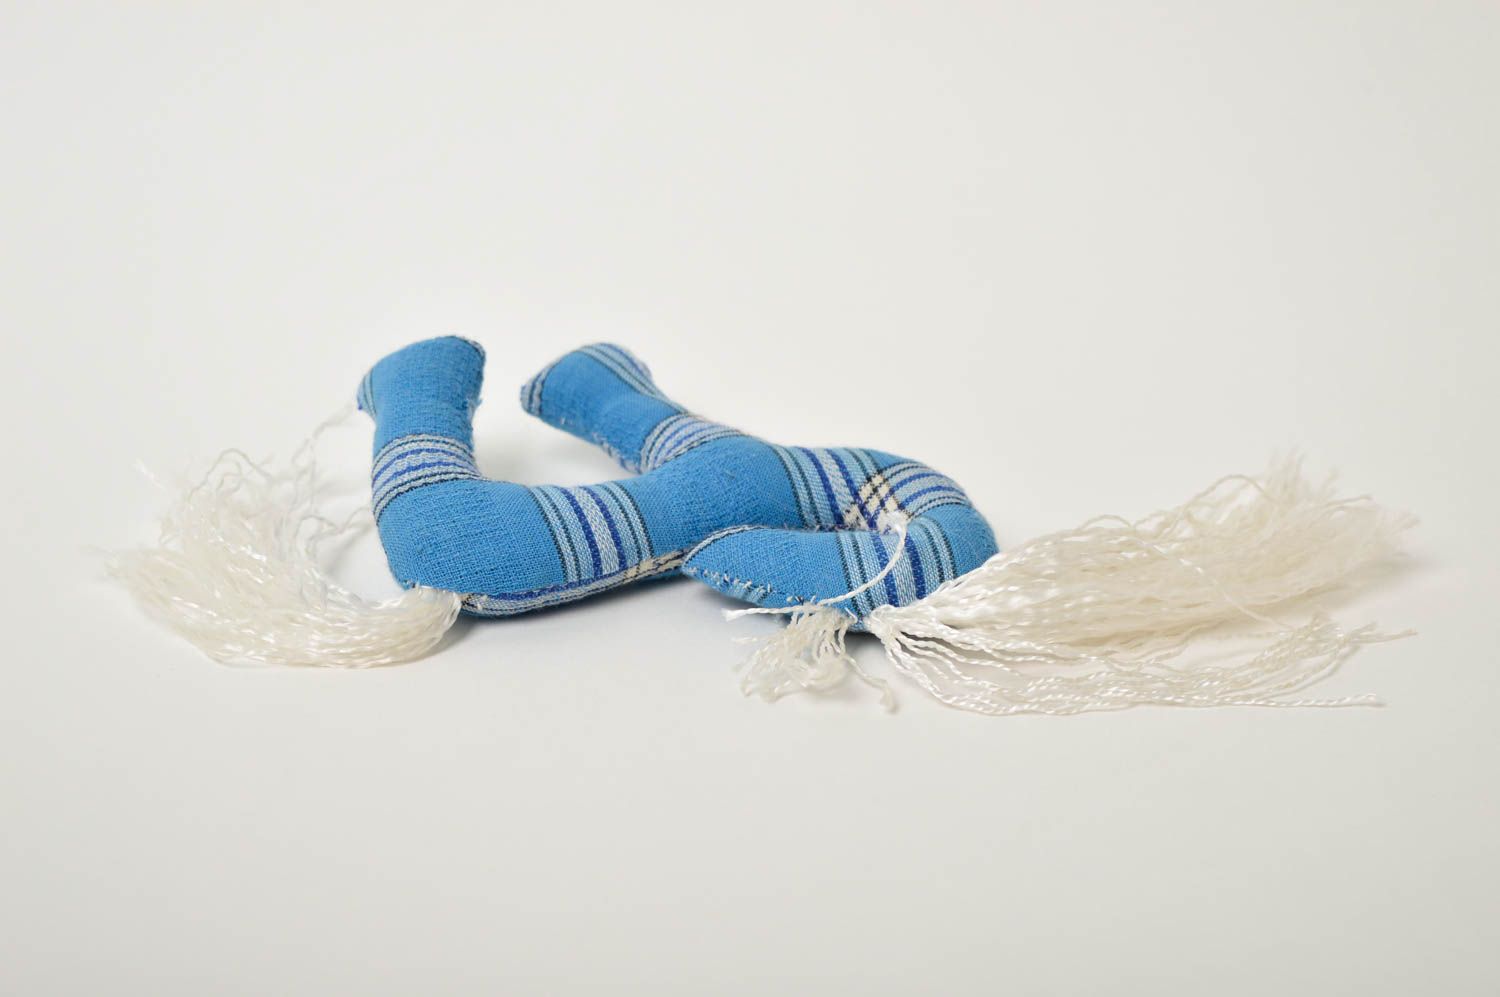 Игрушка конь ручной работы детская игрушка голубая мягкая игрушка тканевая фото 4